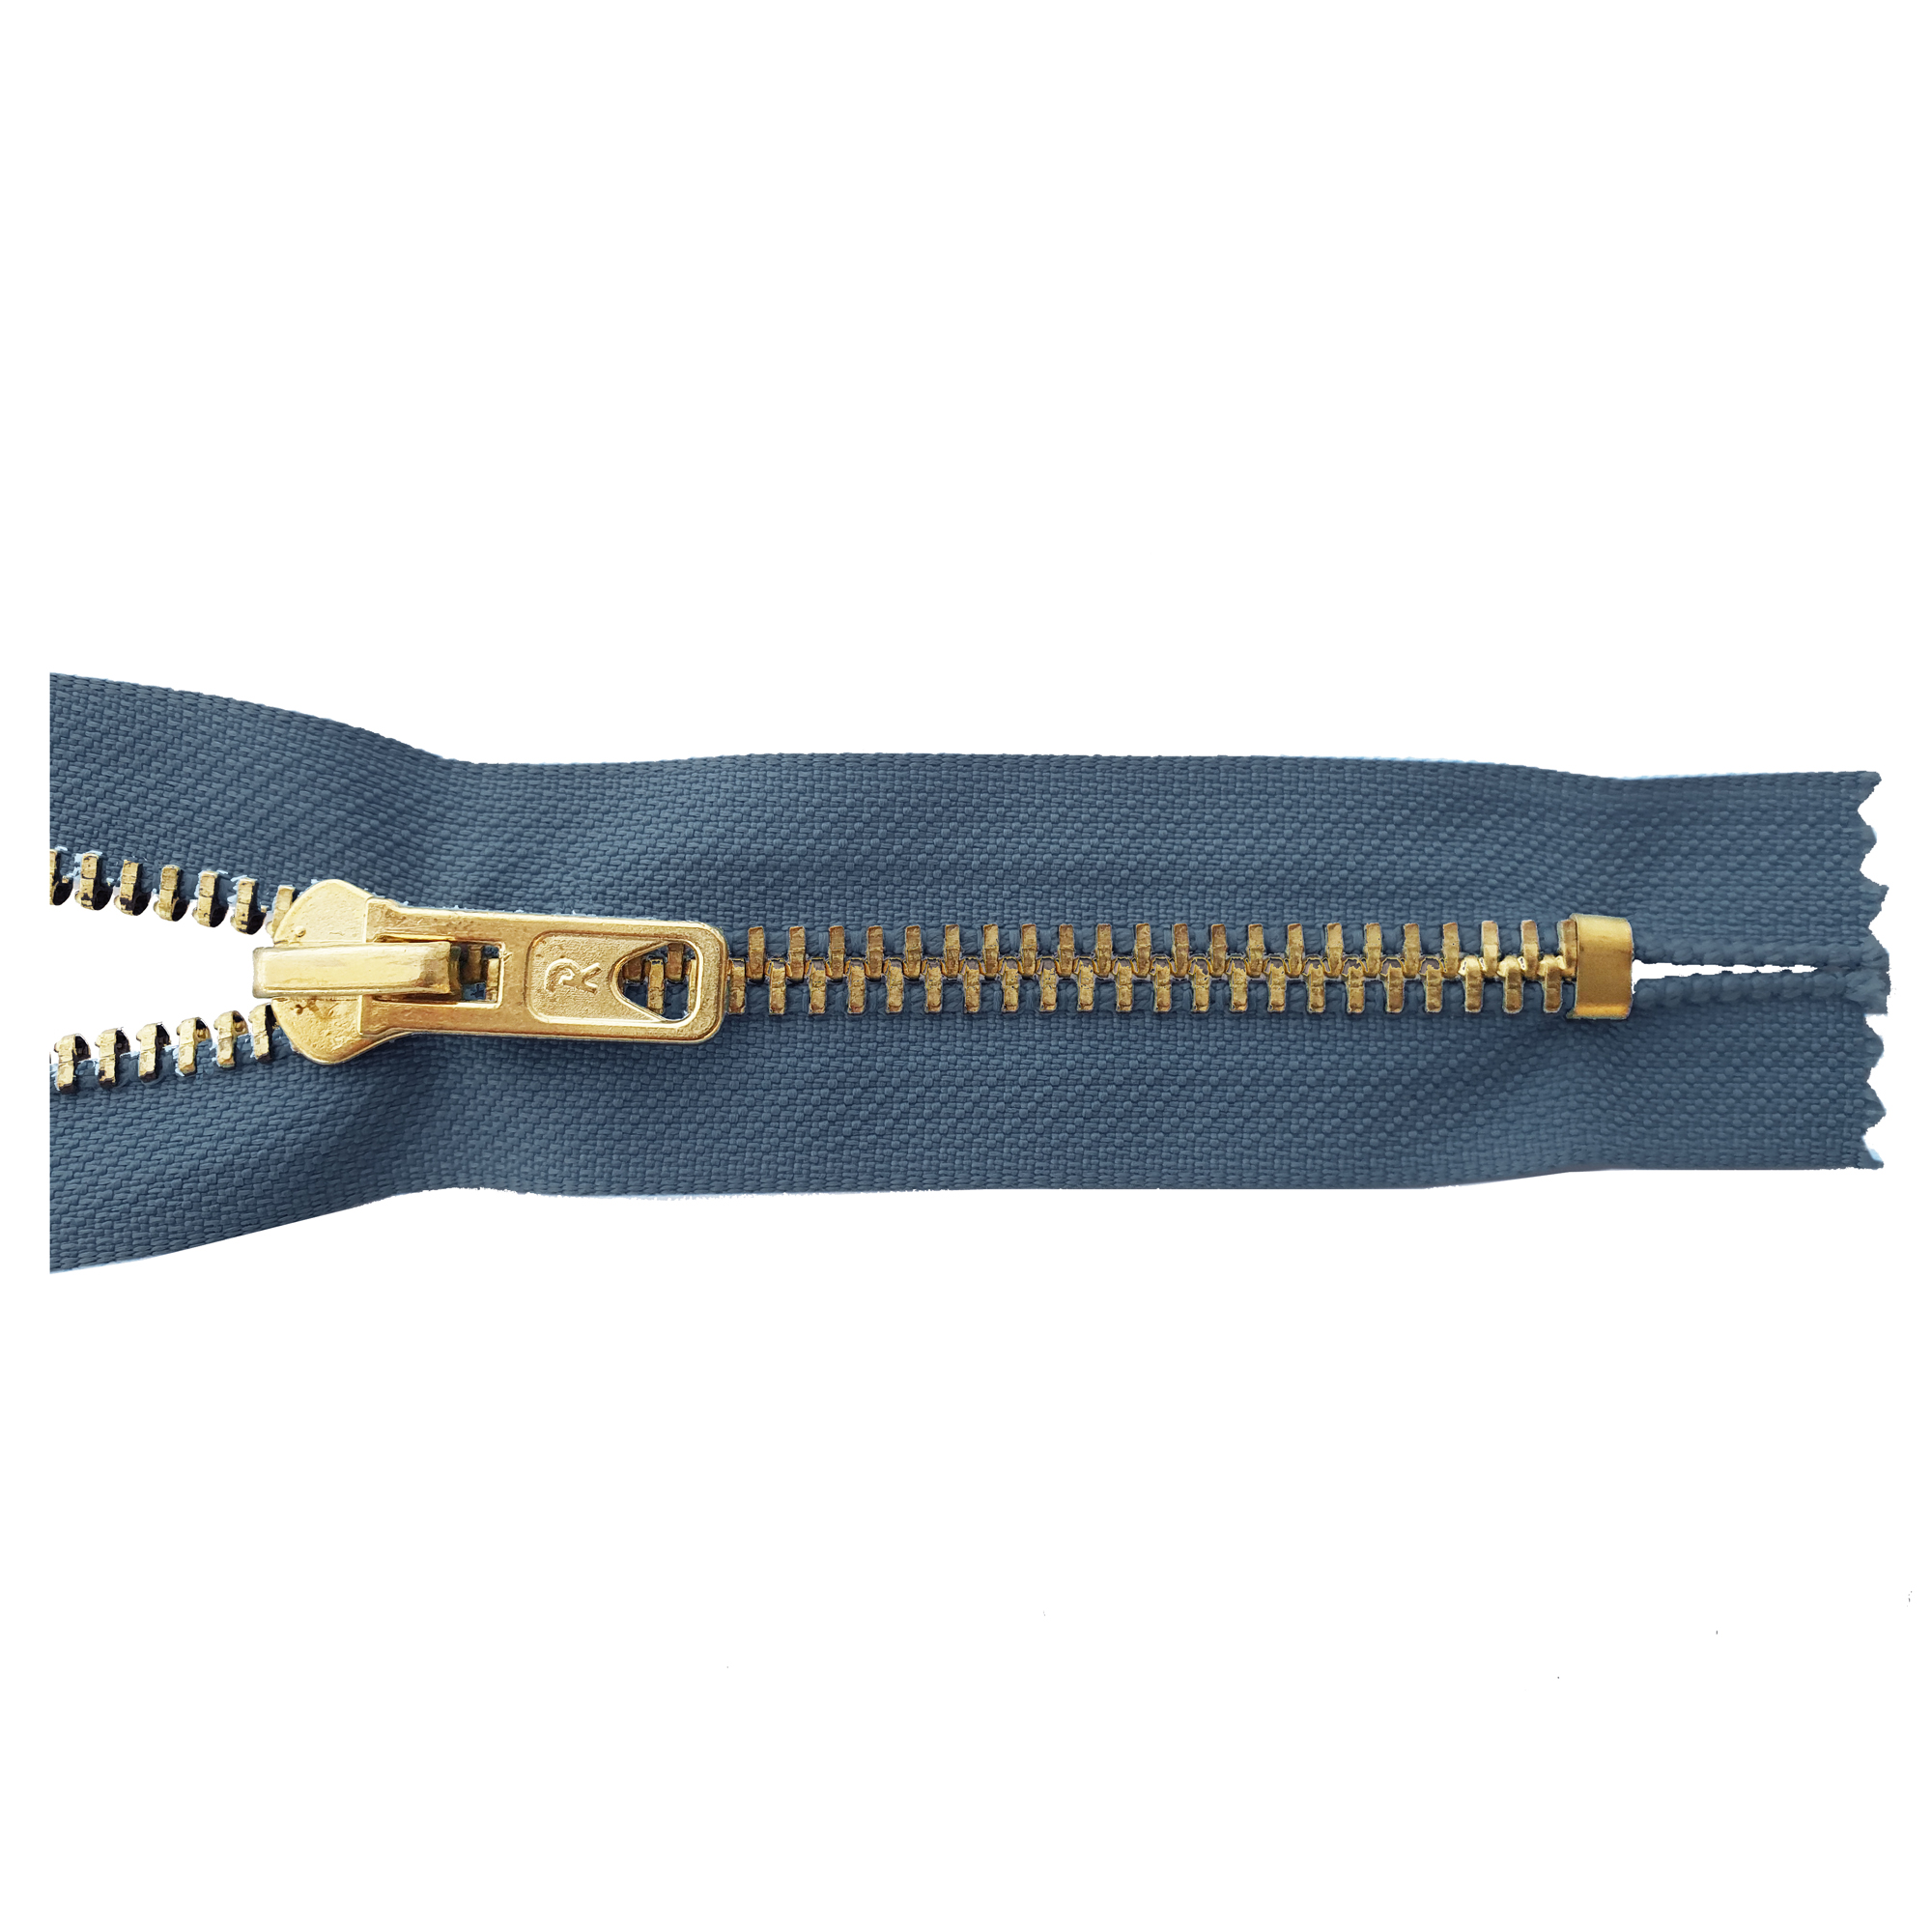 Reißverschluss, nicht teilbar, Metall goldf. breit, jeansgraublau, hochwertiger Marken-Reißverschluss von Rubi/Barcelona